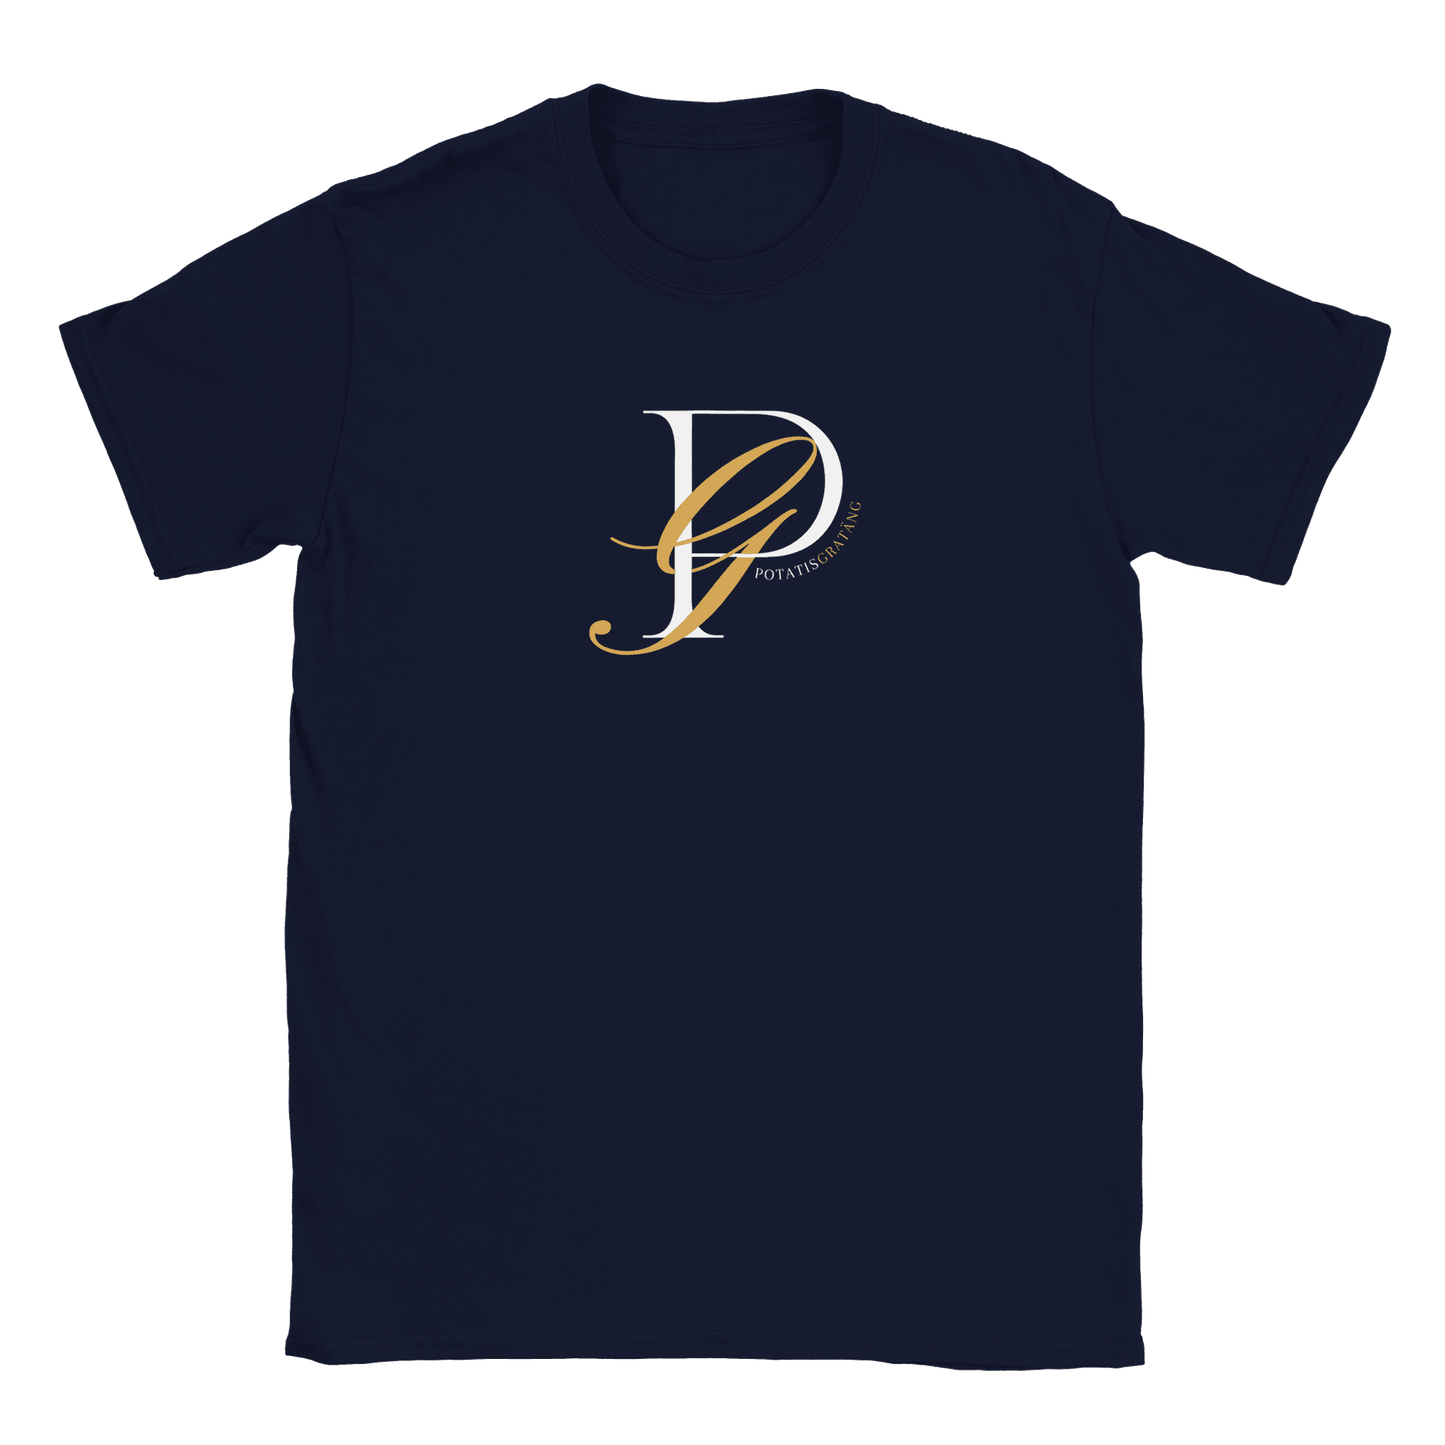 Potatisgratäng - T-shirt Navy